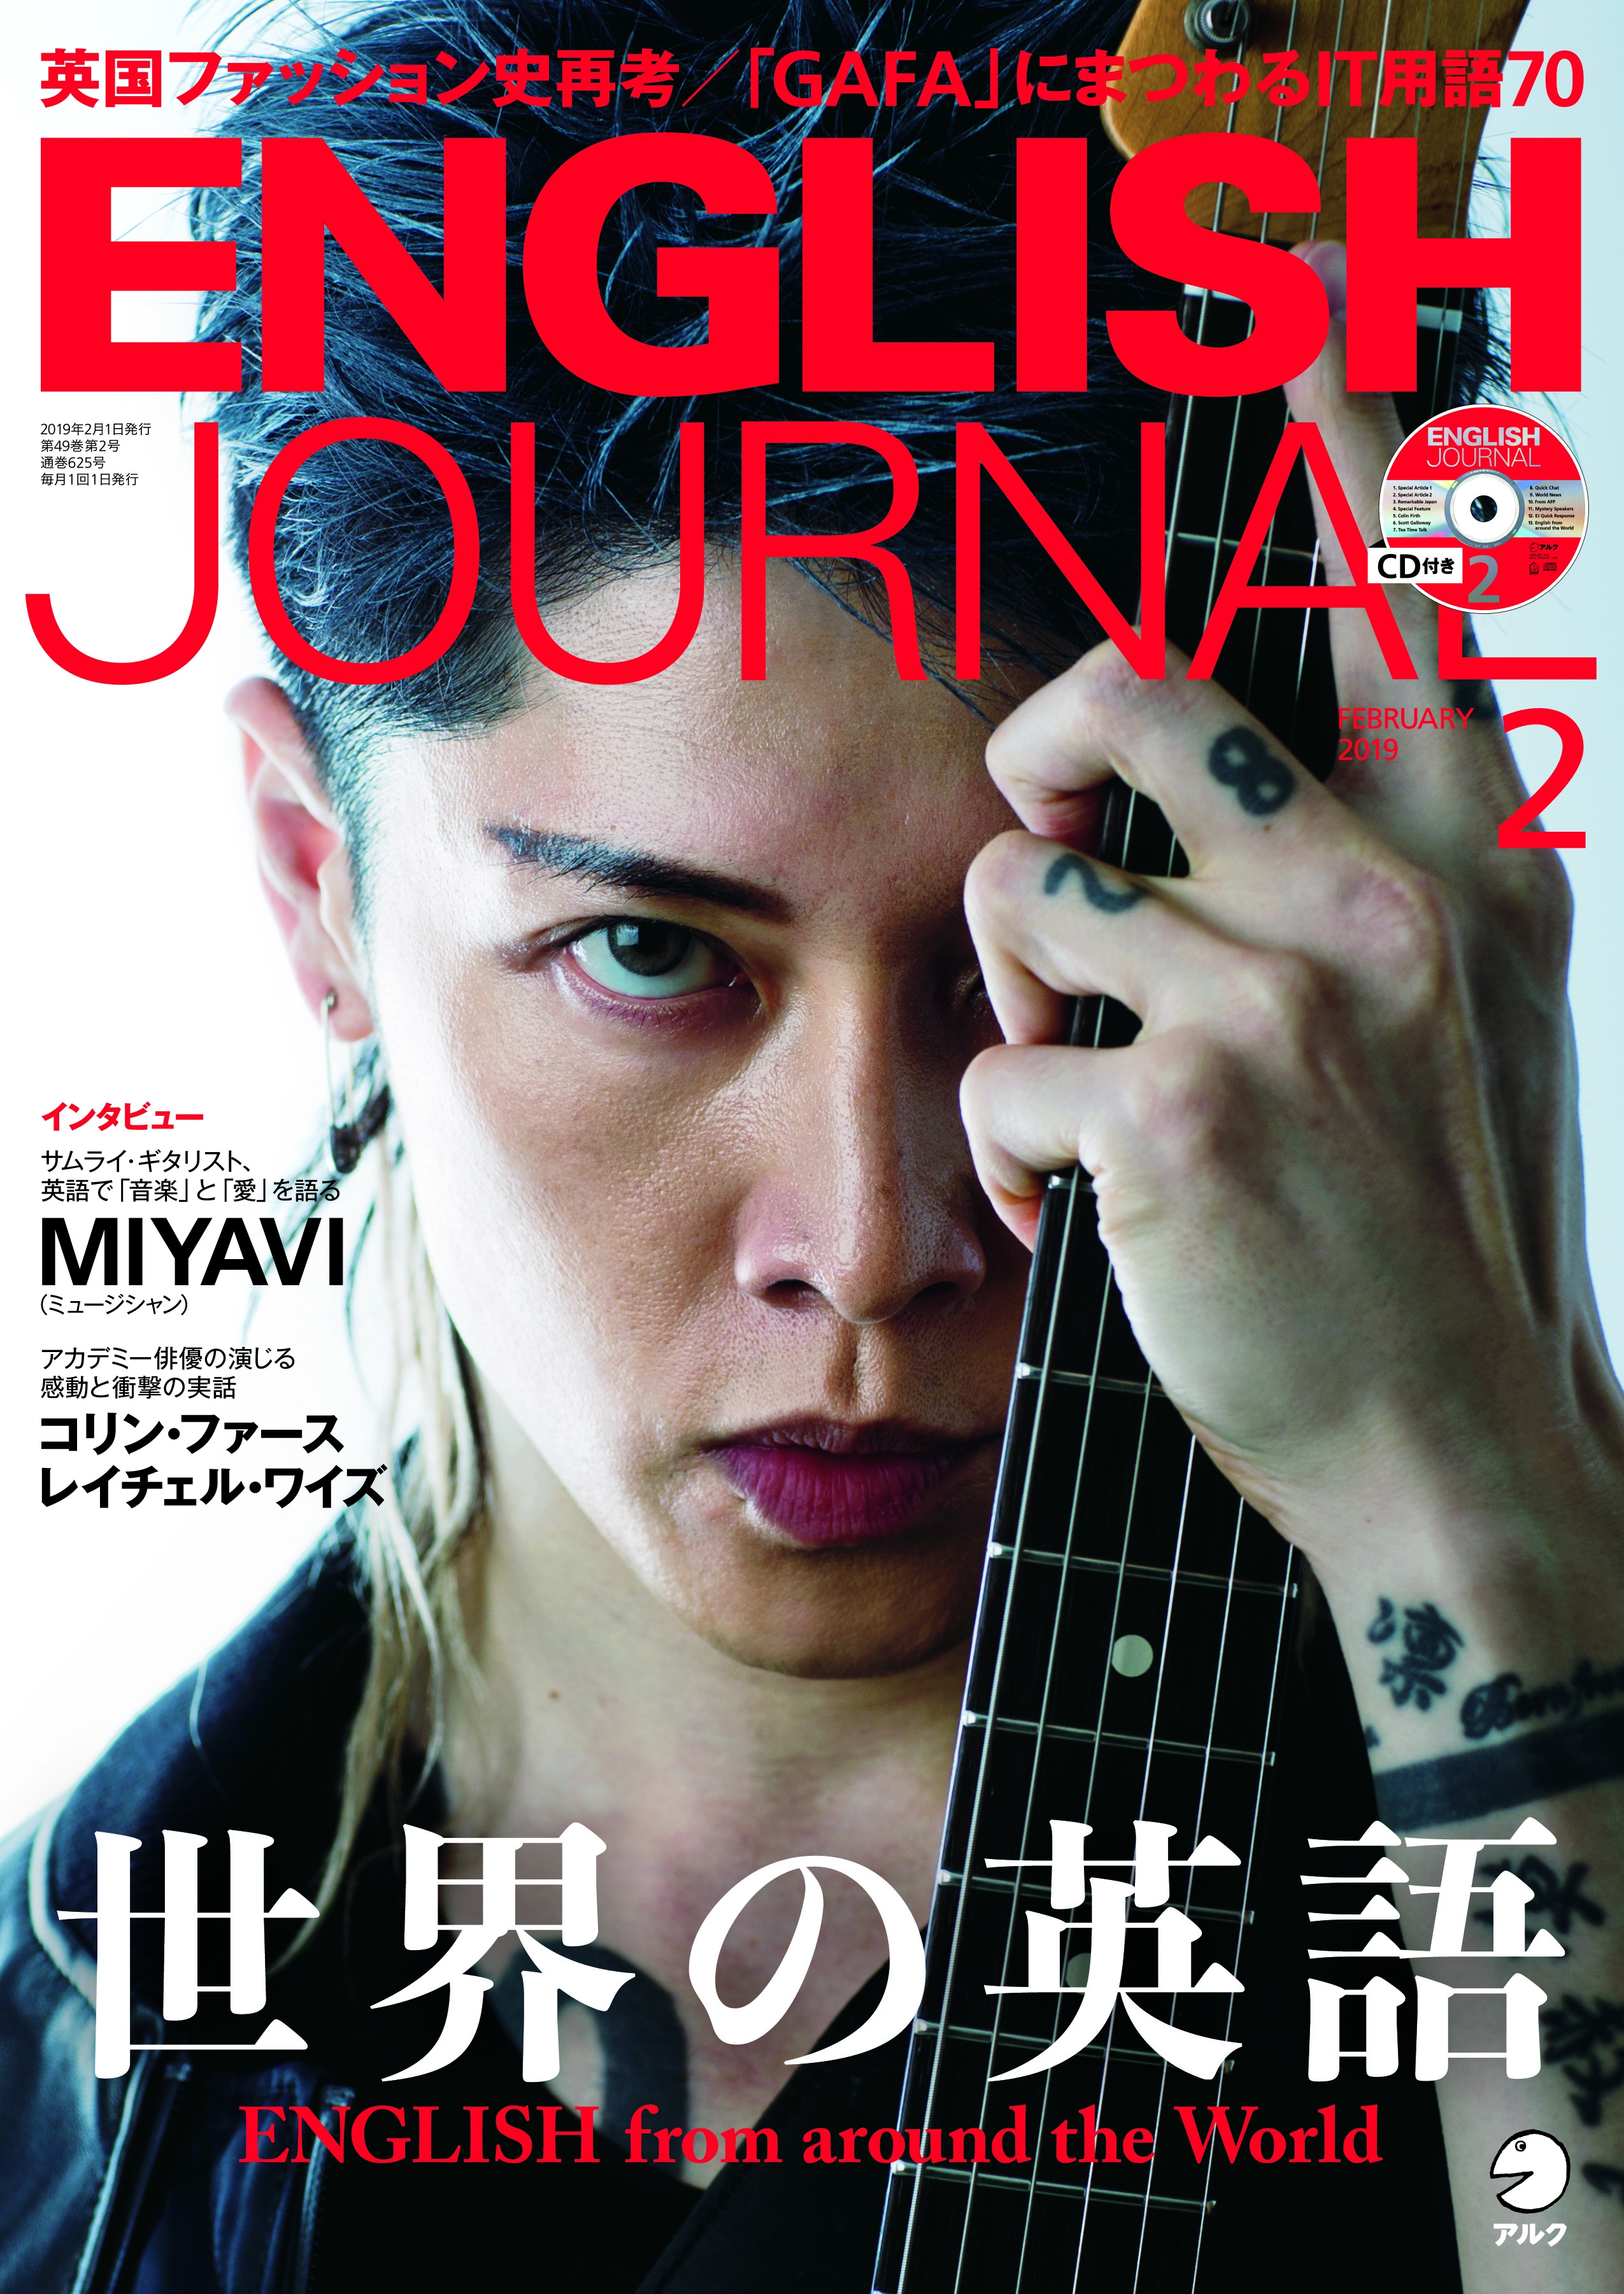 サムライ ギタリスト Miyavi特別インタビュー English Journal 19年2月号 19年1月5日発売 株式会社アルクのプレスリリース